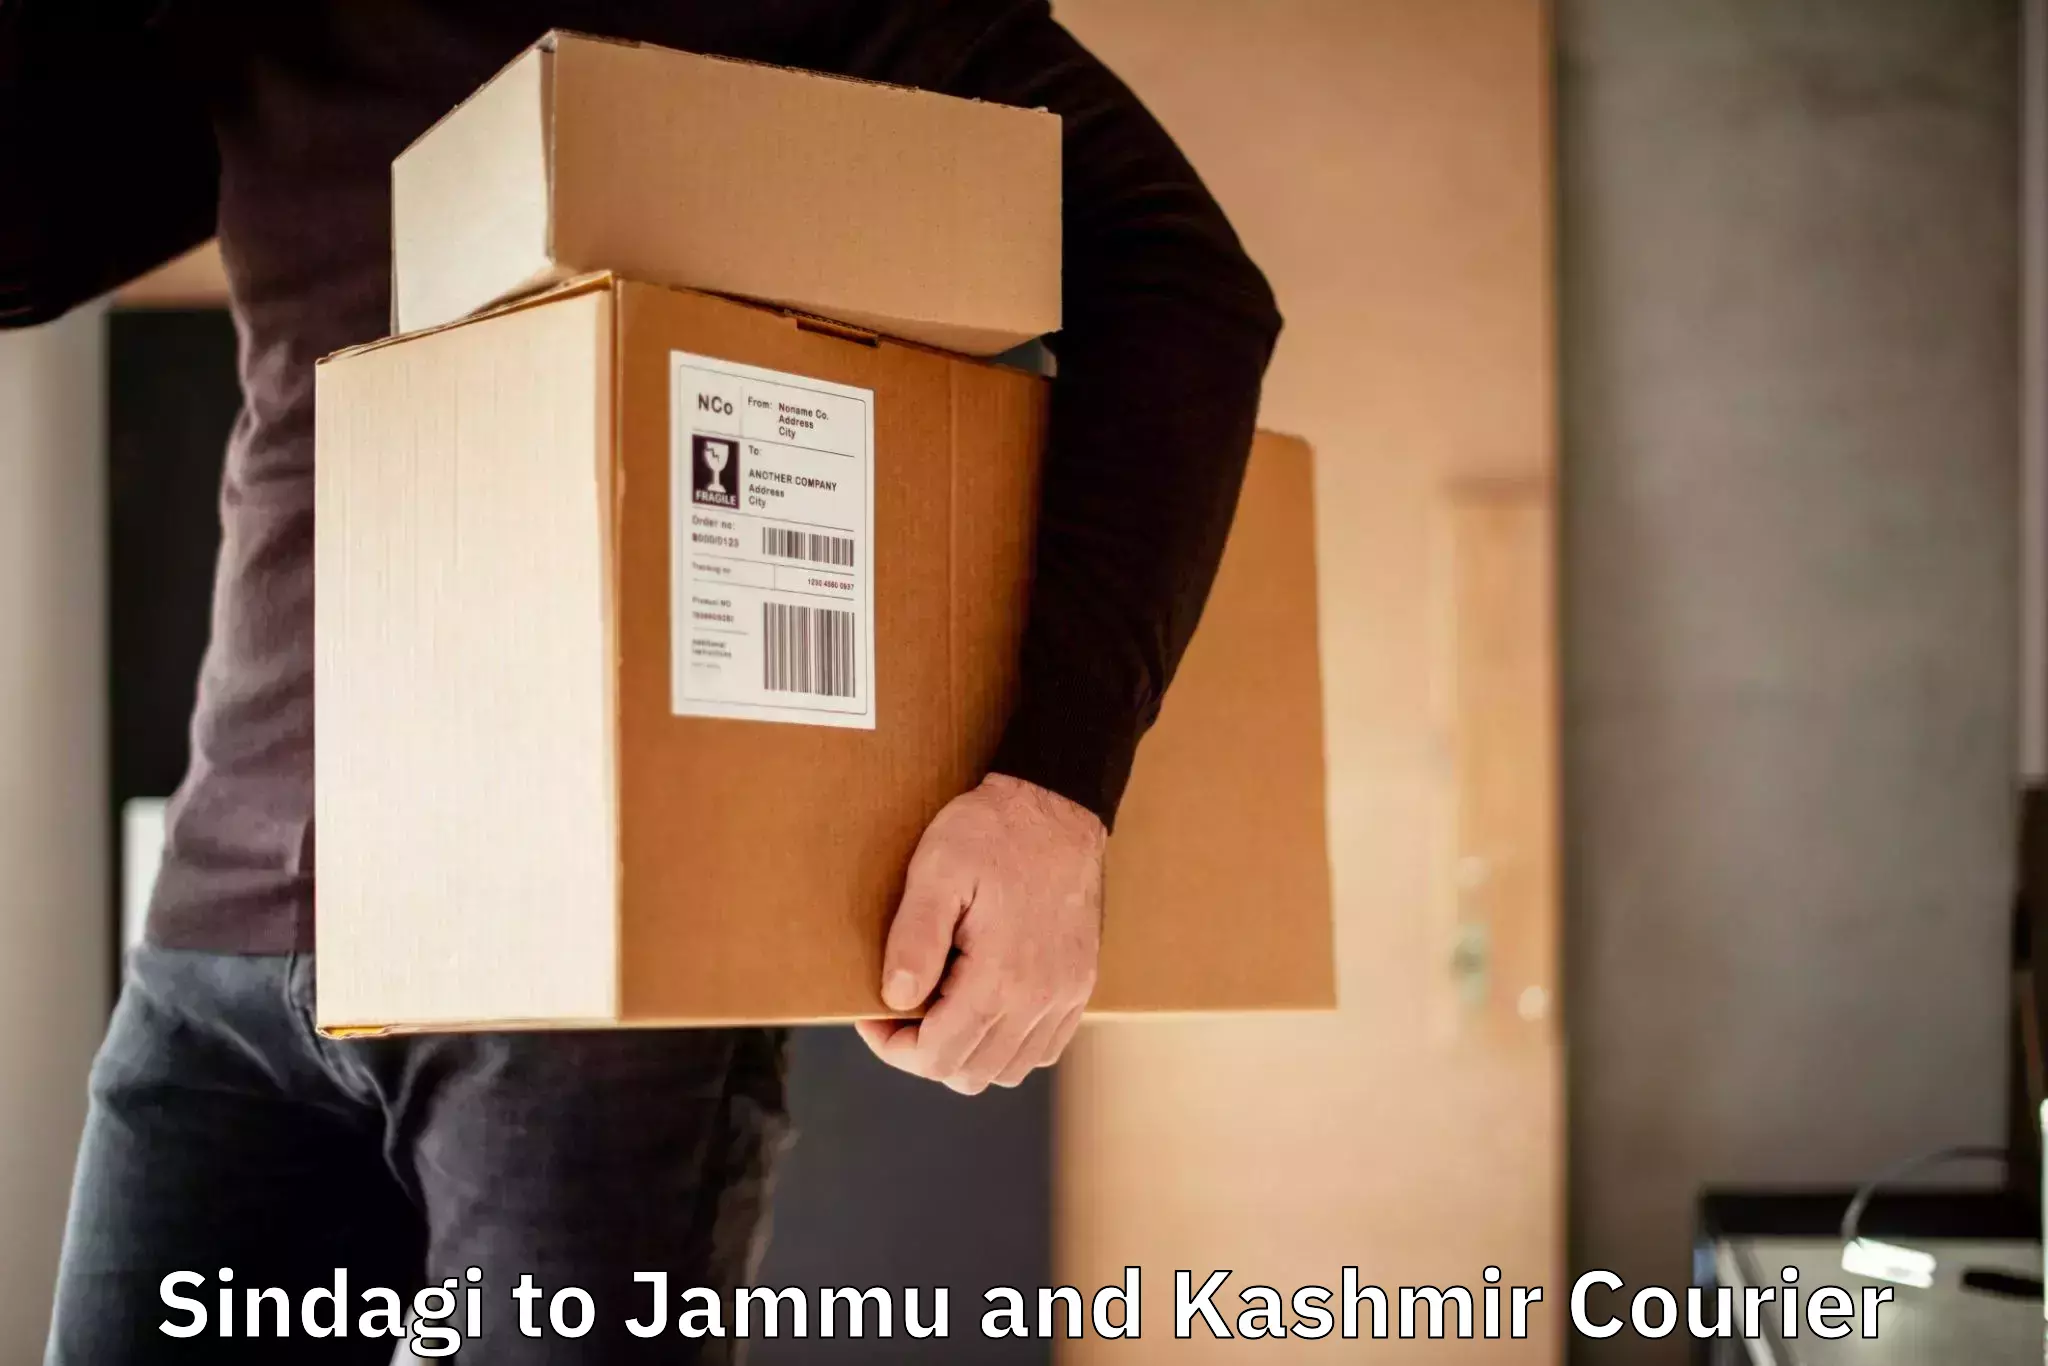 Courier service partnerships Sindagi to Jammu and Kashmir